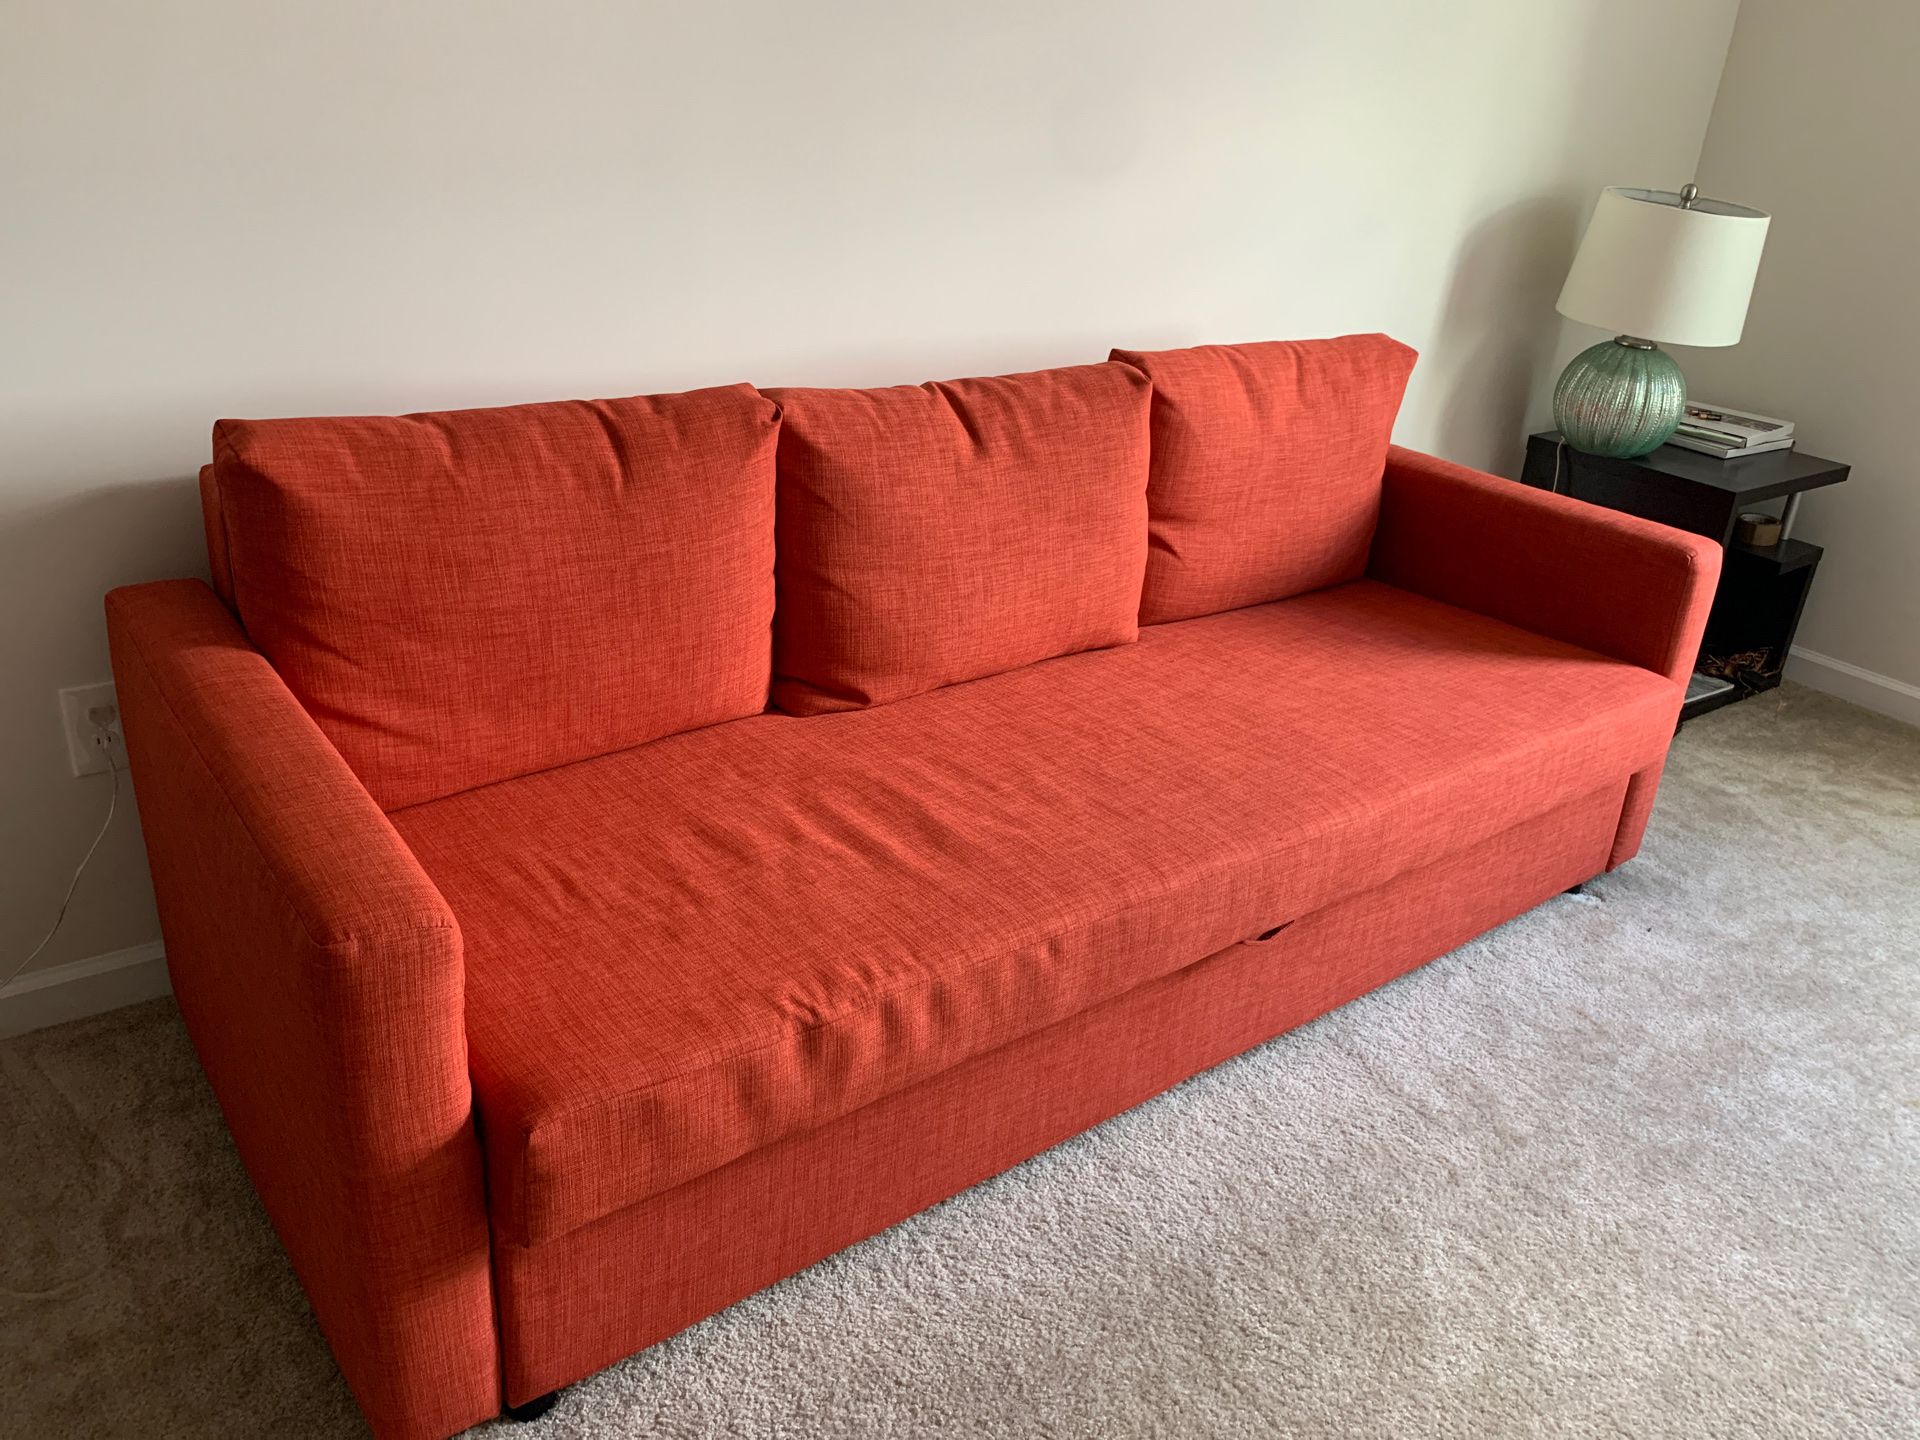 IKEA convertable futon , almost new condition